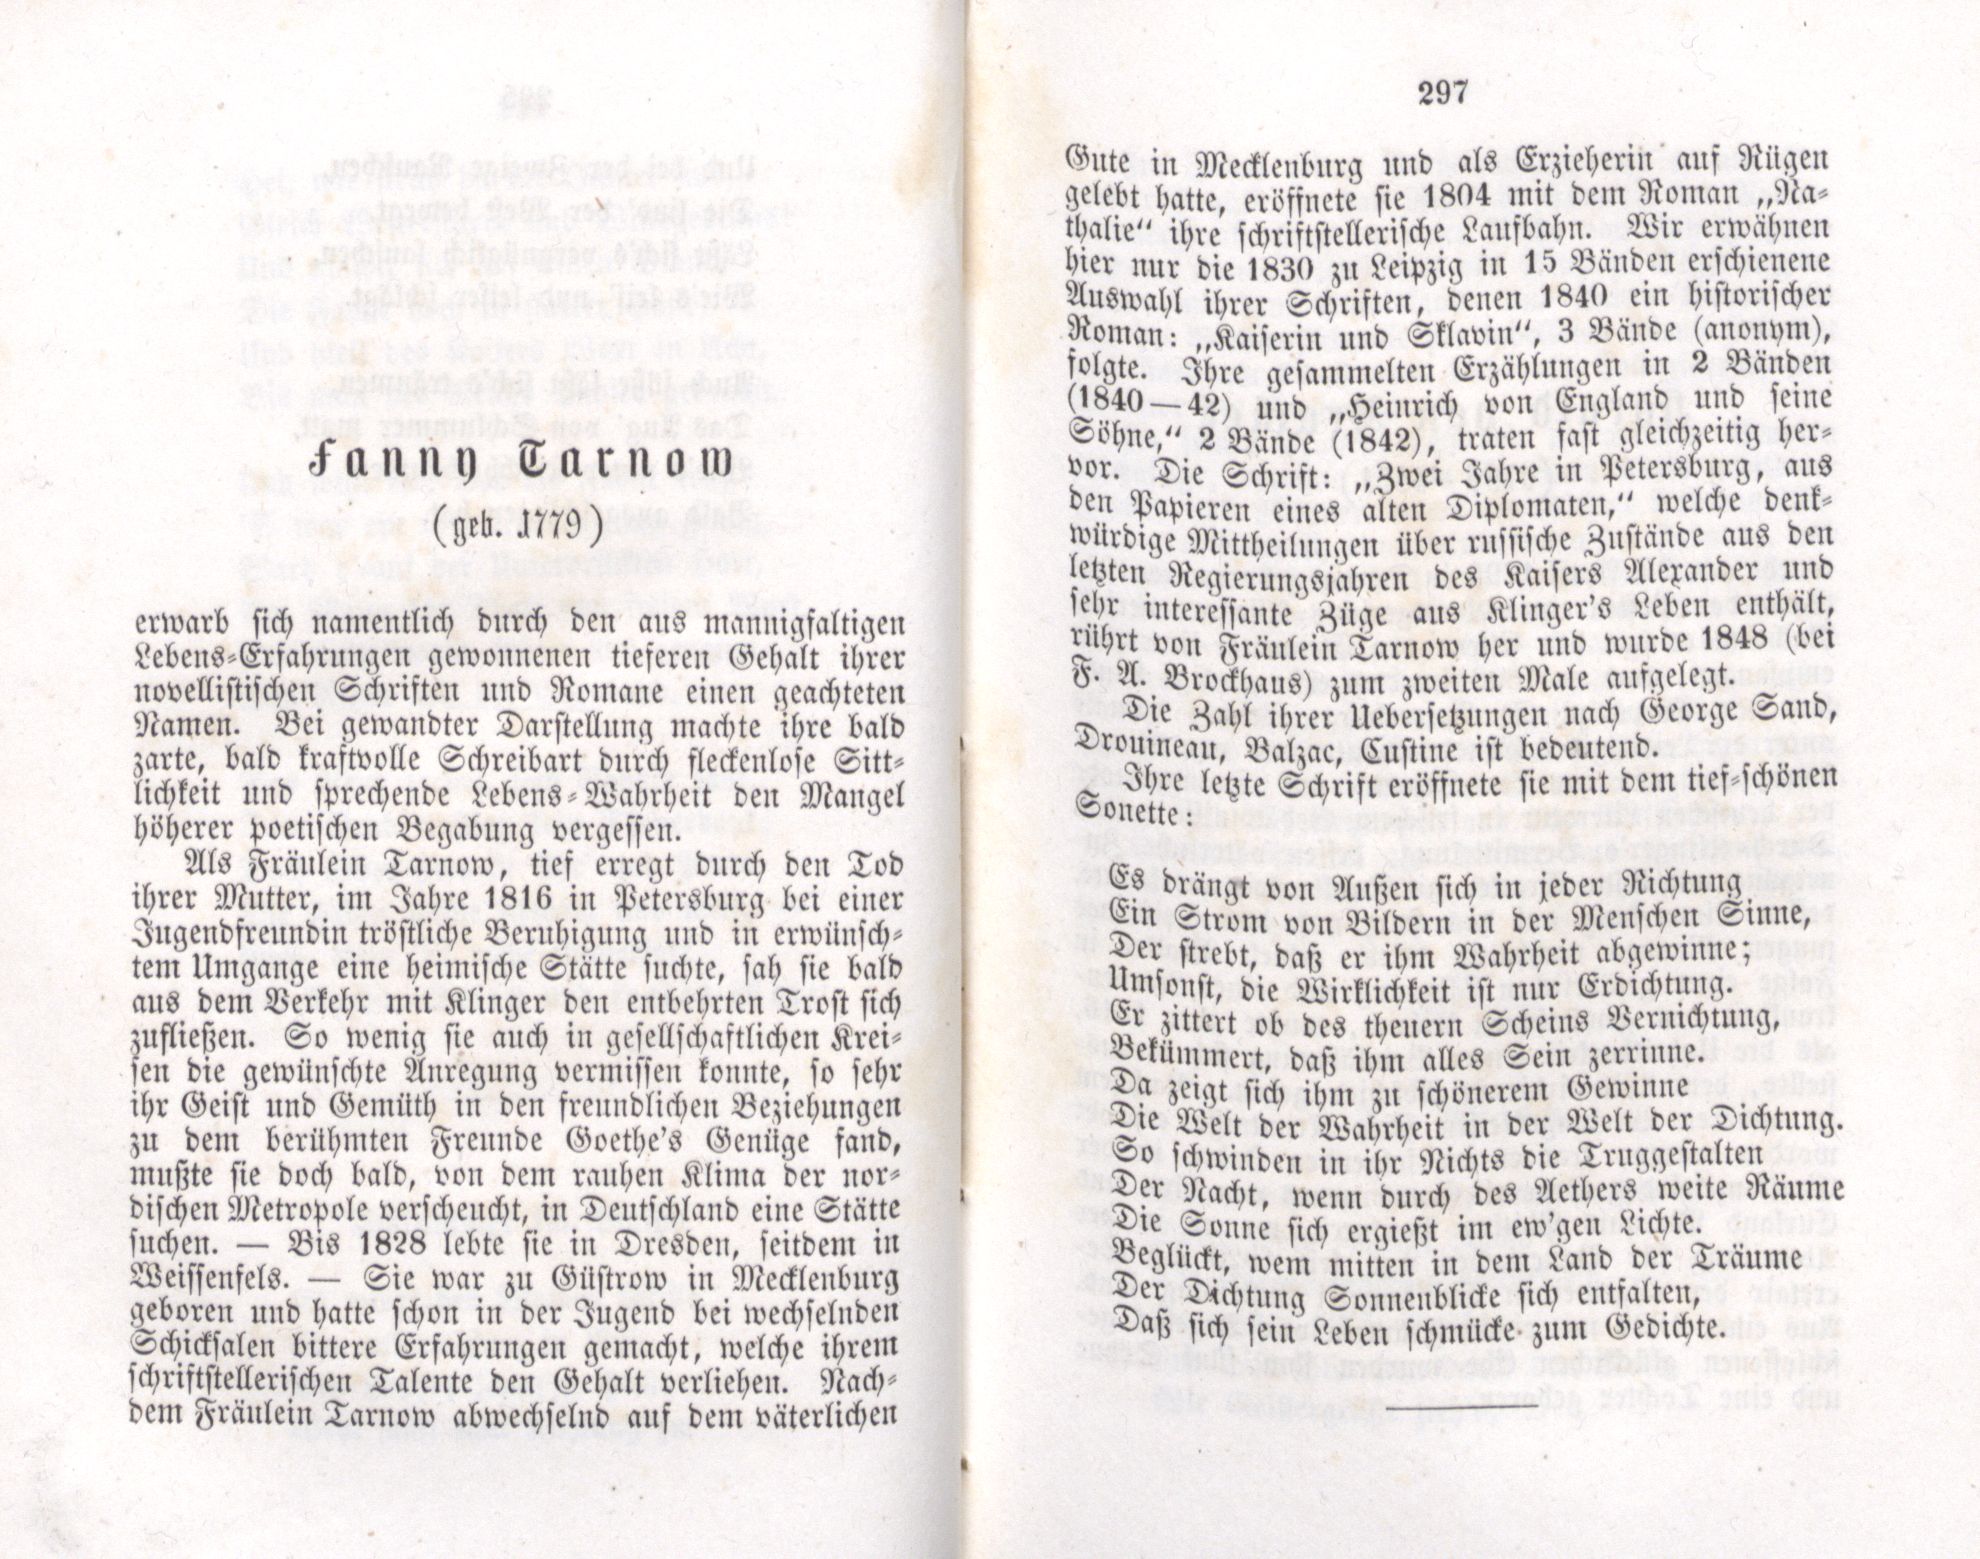 Es drängt von Aussen sich in jeder Richtung ... (1855) | 1. (296-297) Main body of text